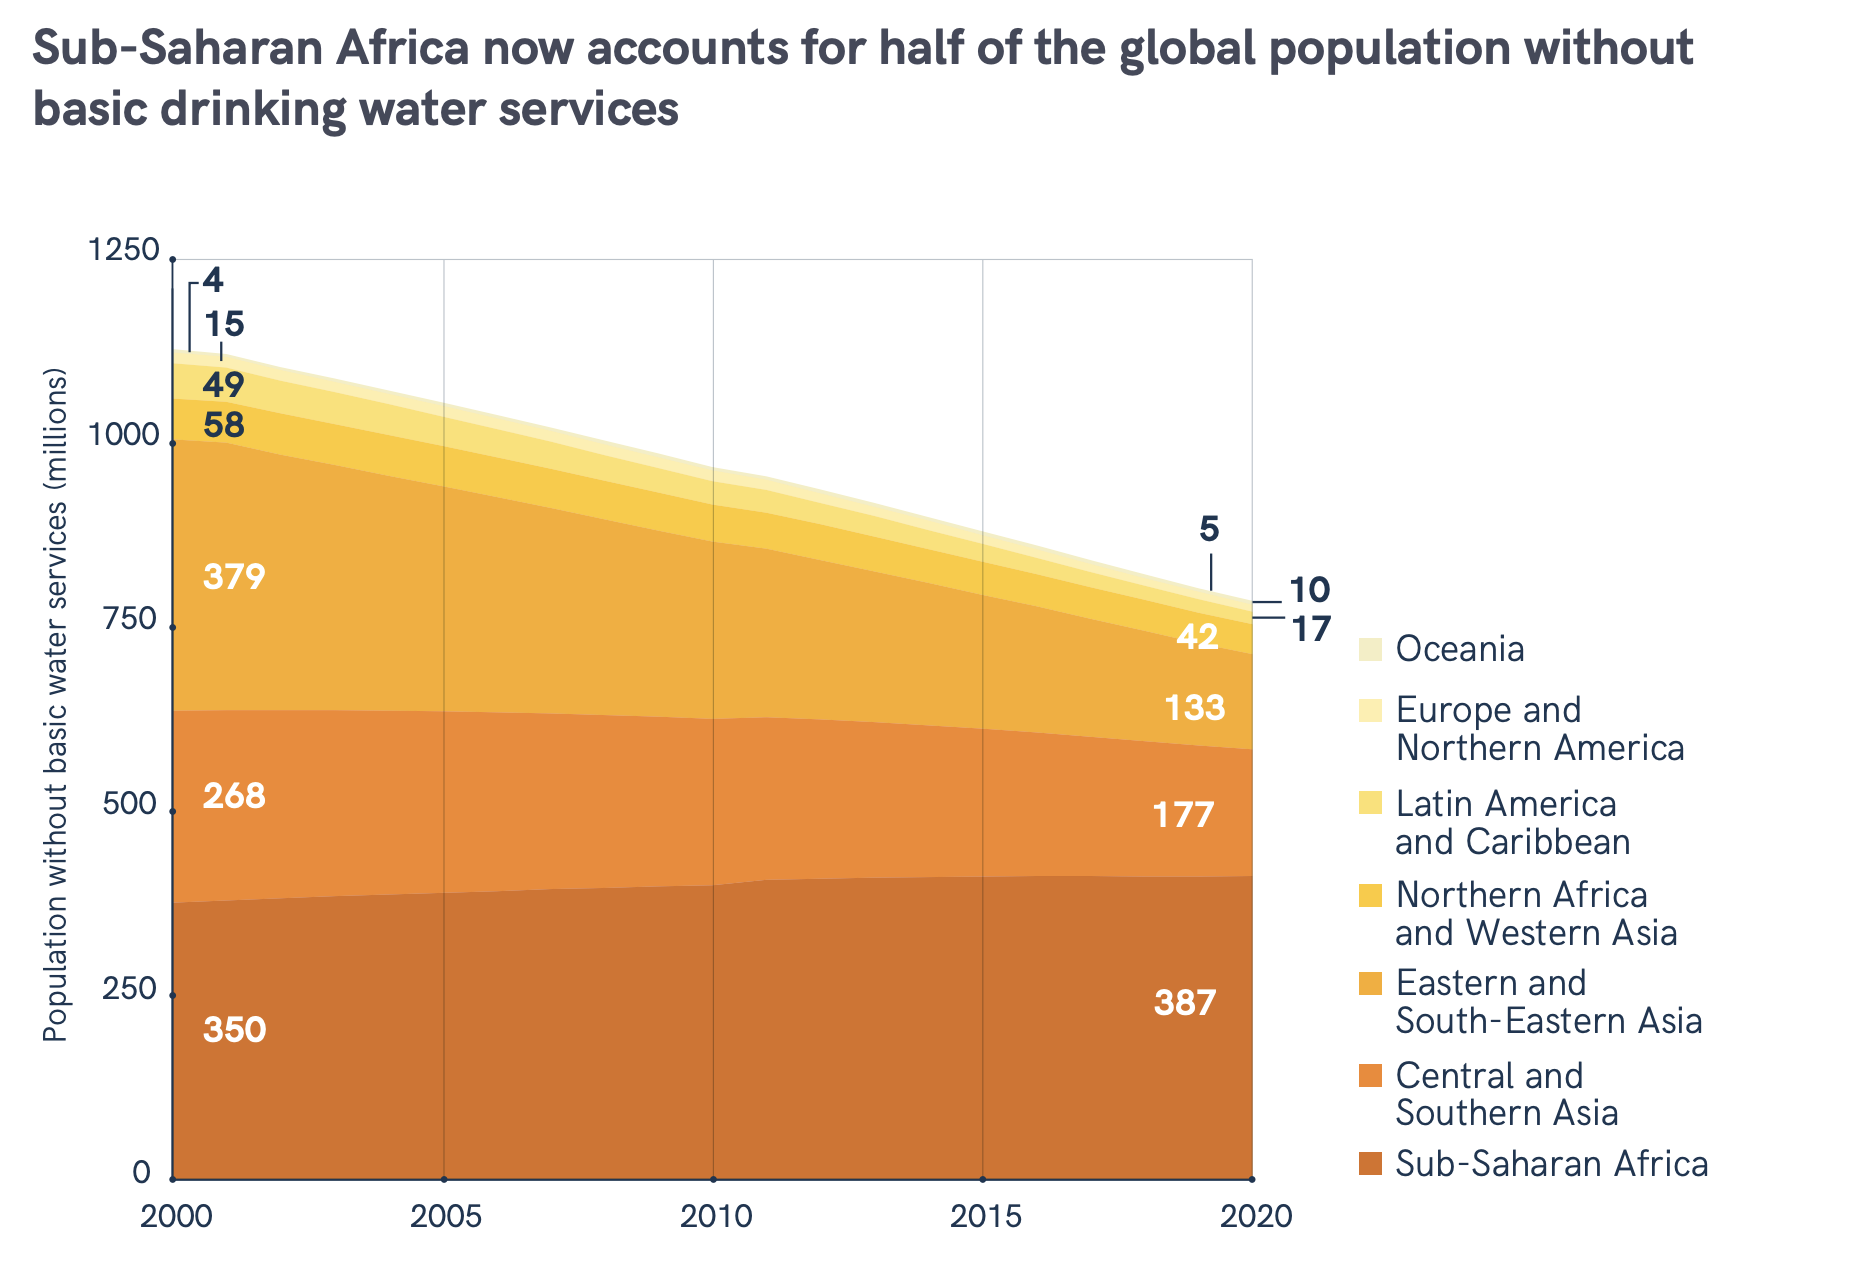 África subsaariana representou metade da população global sem acesso básico a serviços de água potável em 2020